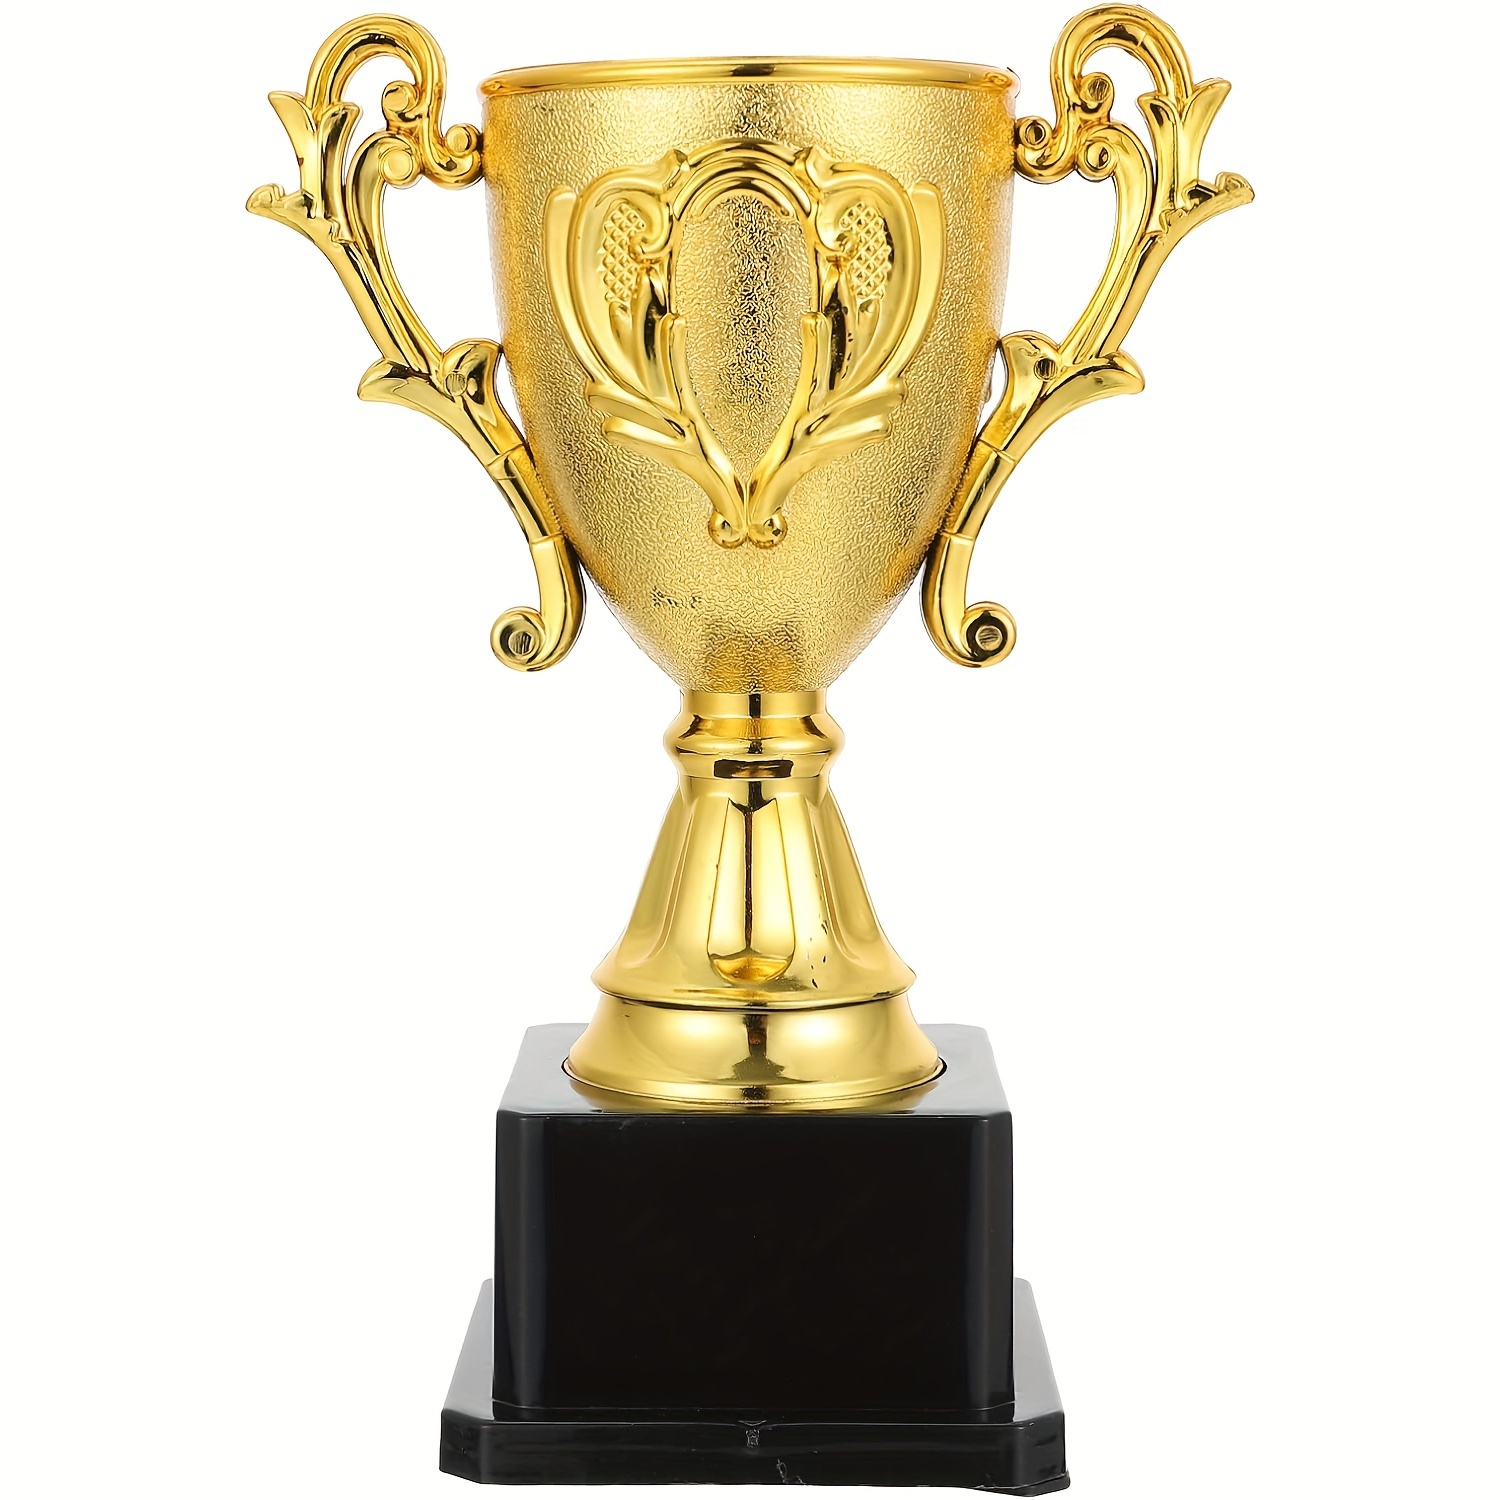 Champion Football cuivre argent massif trophée de la Coupe Titan Ballon  d'Or Football Fan Cheer leader Souvenirs résine artisanat Trophées Keepsake